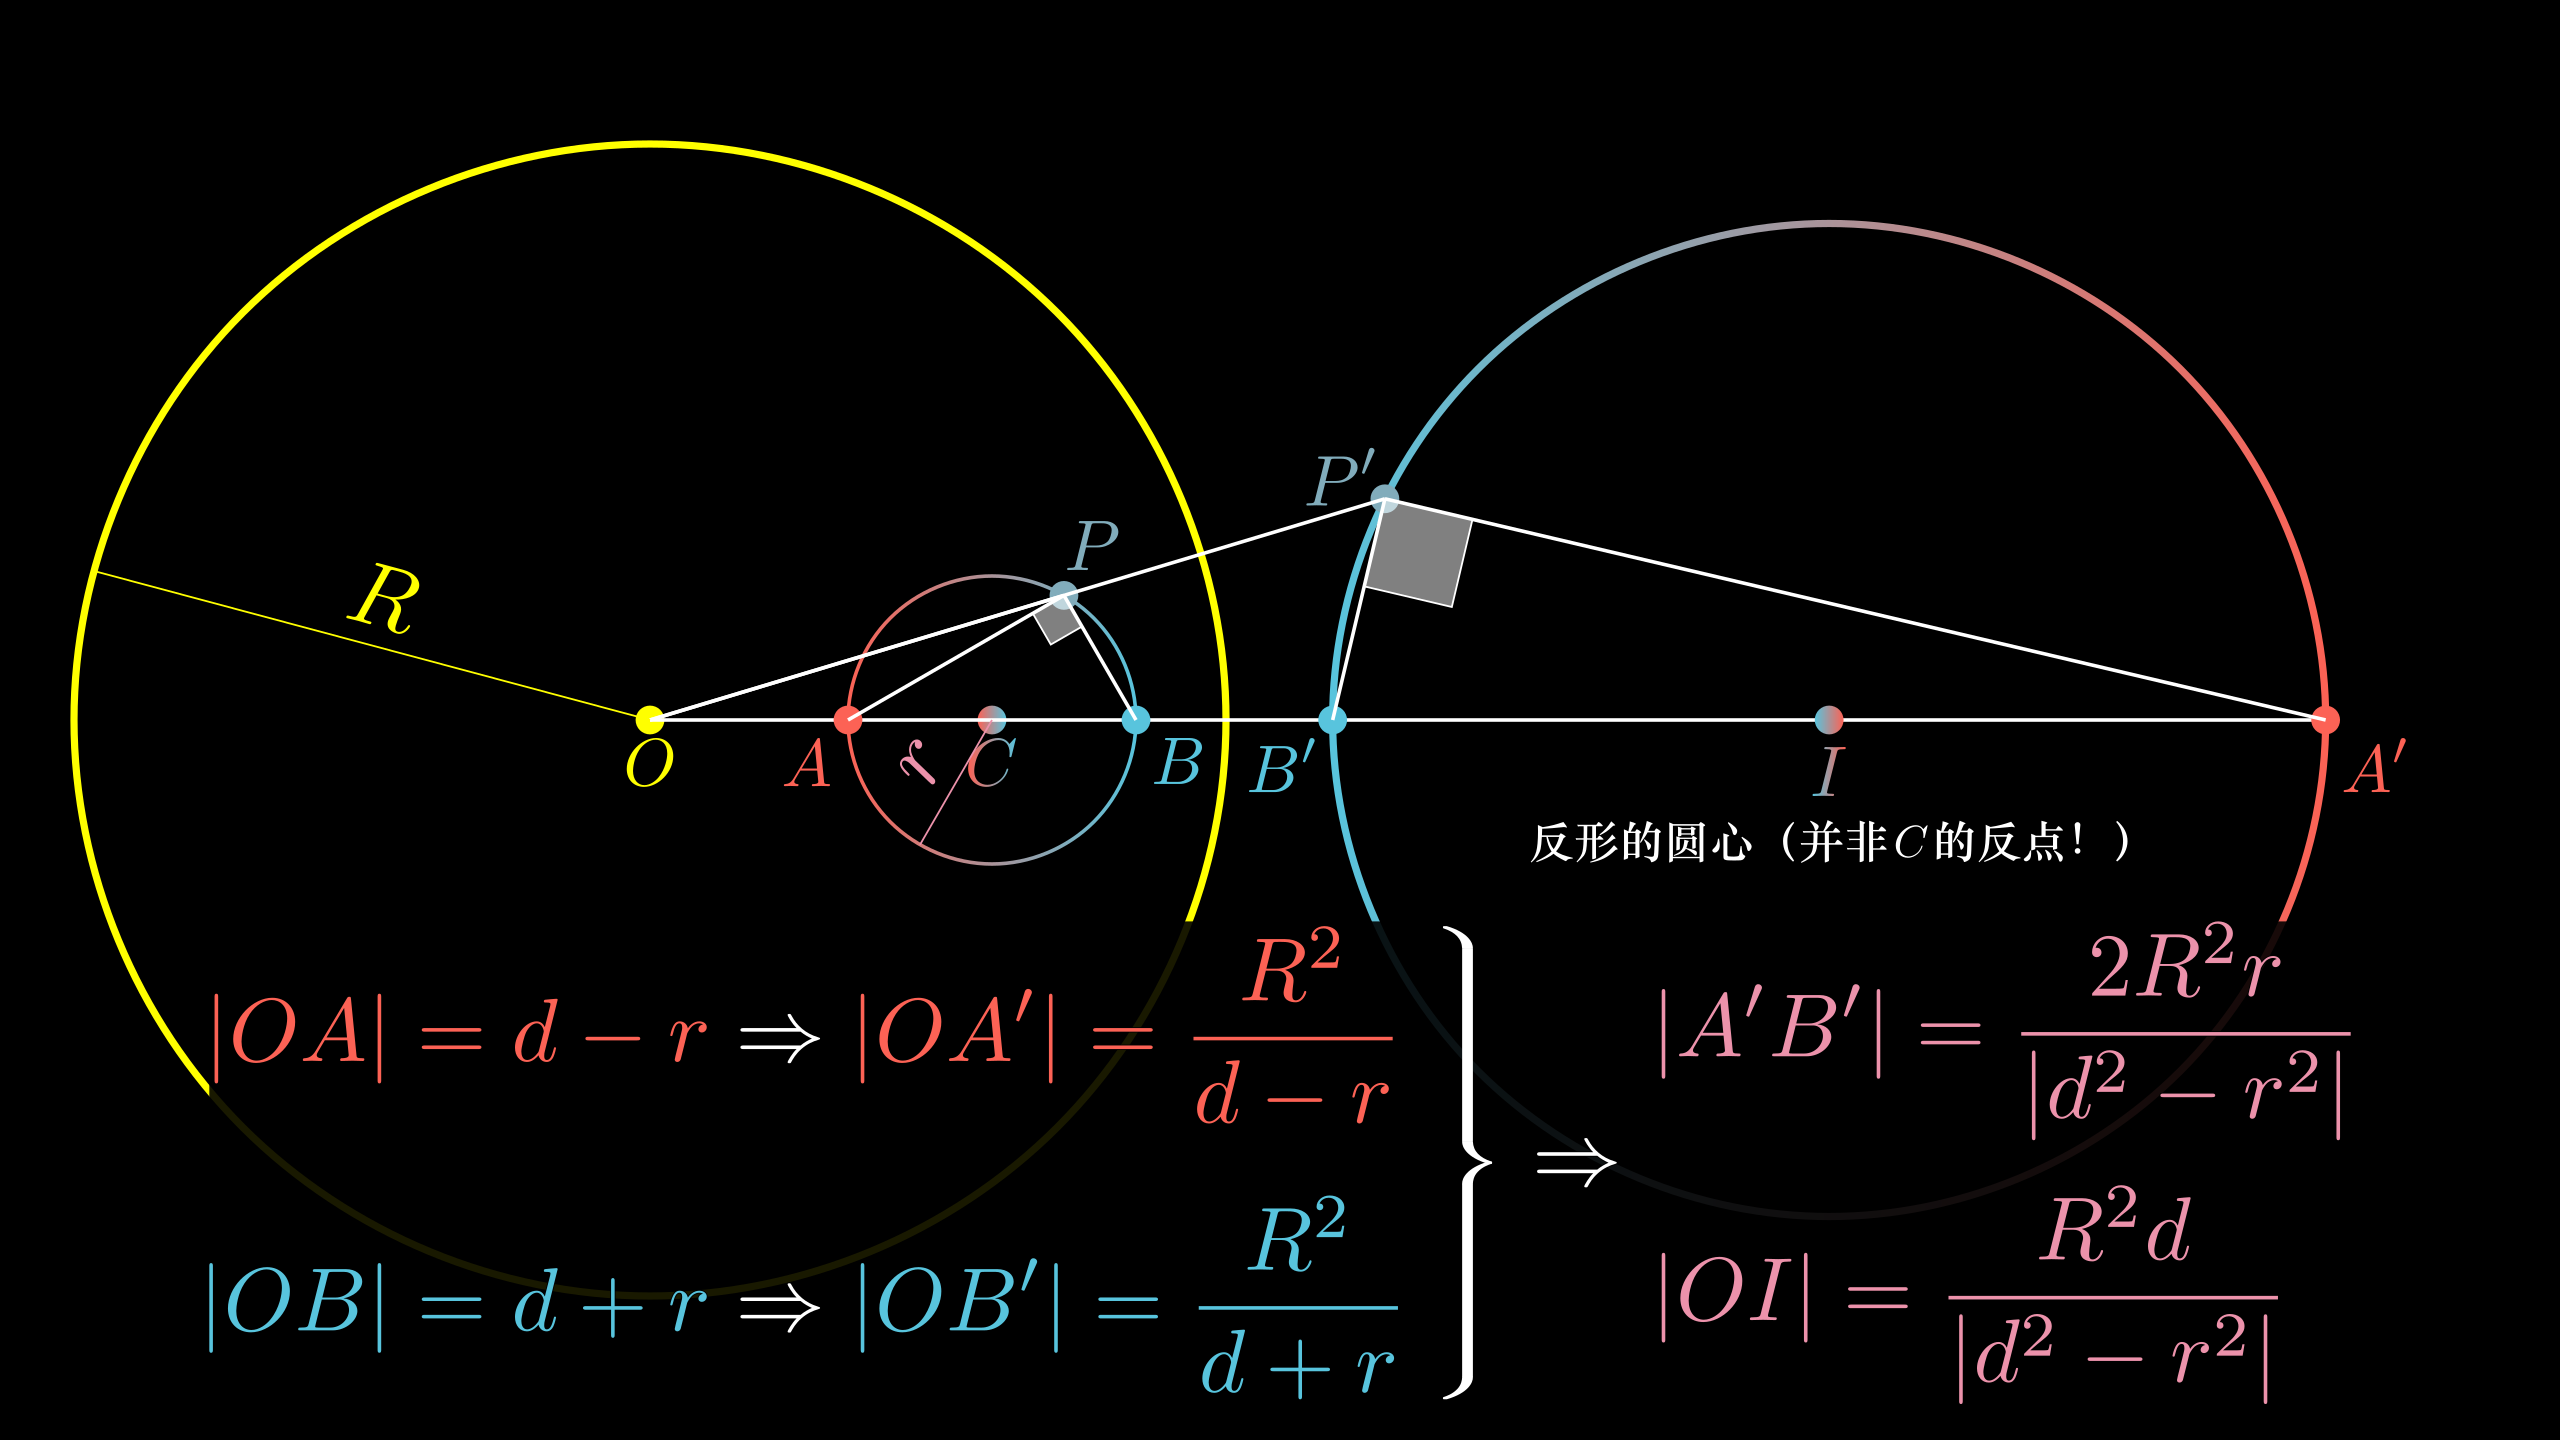 【数学大师】圆的定义和垂径定理——伦敦眼